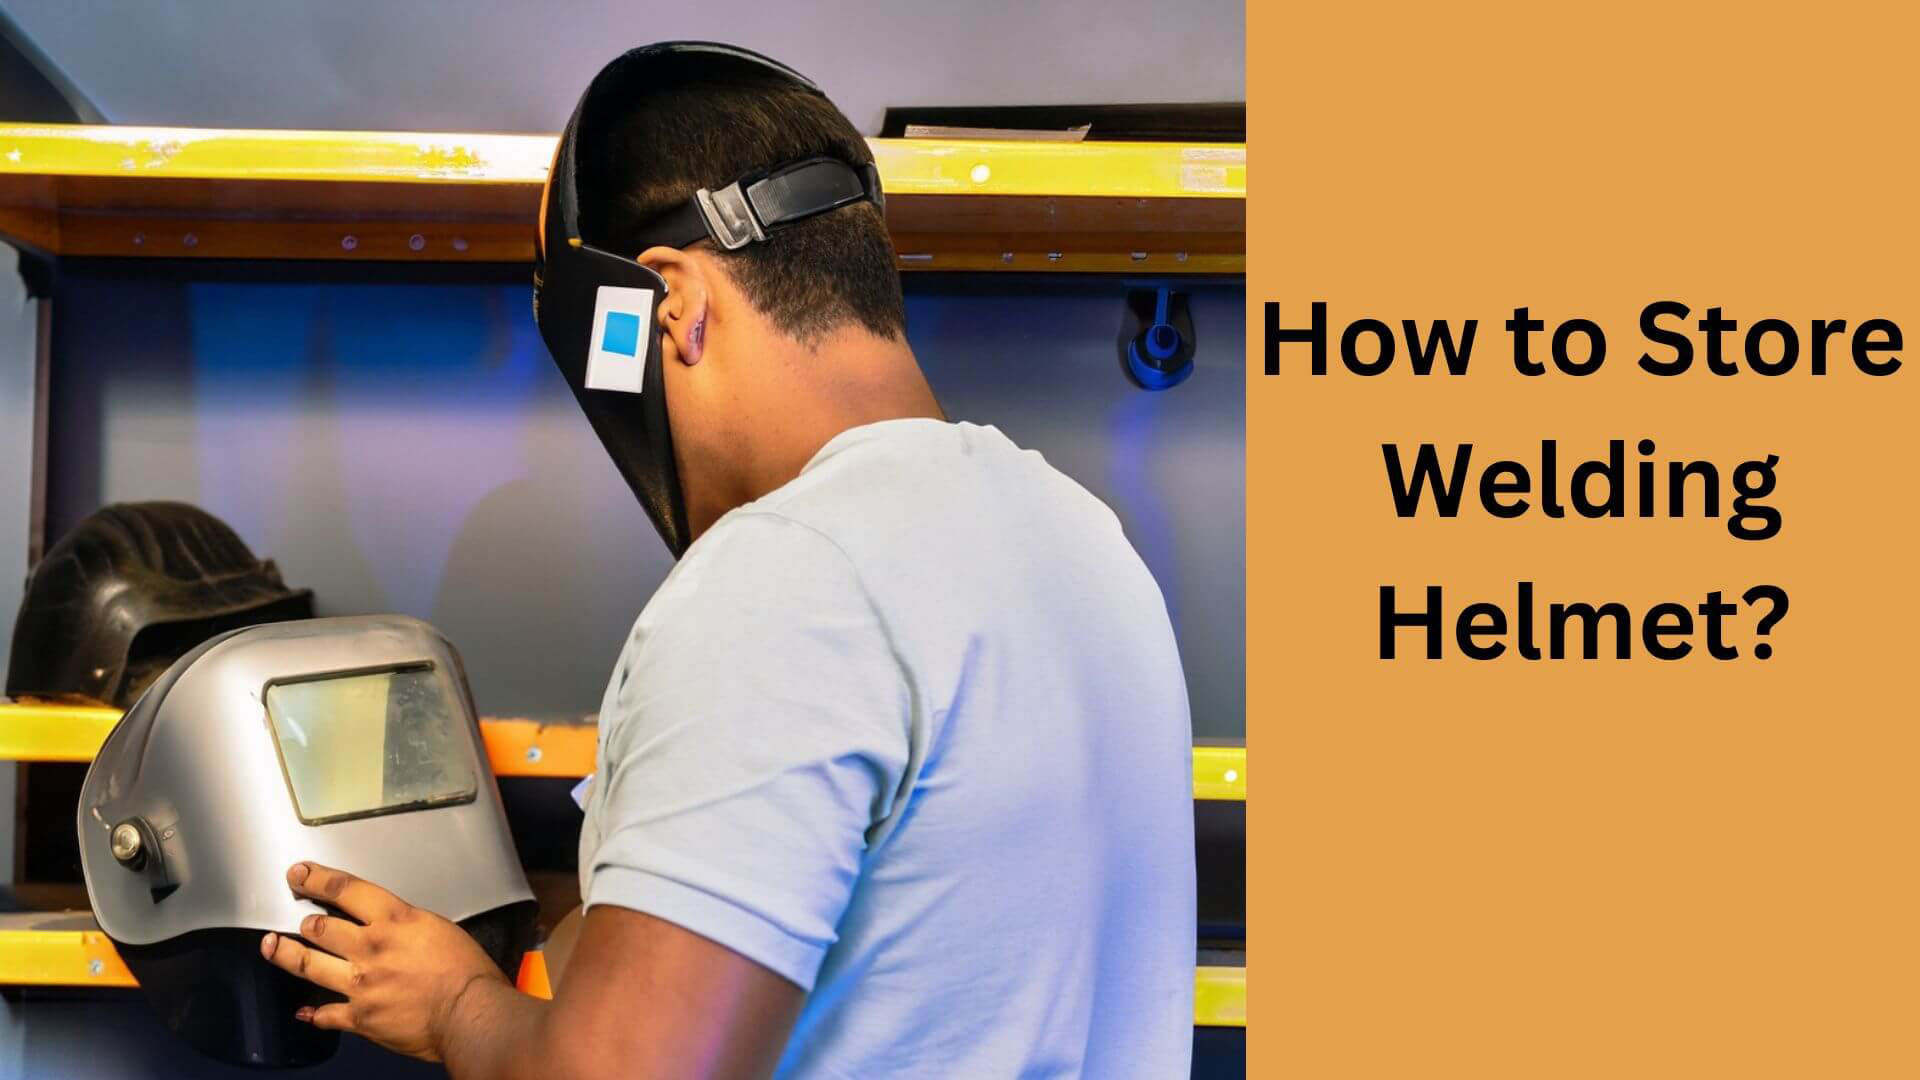 How to Store Welding Helmet?